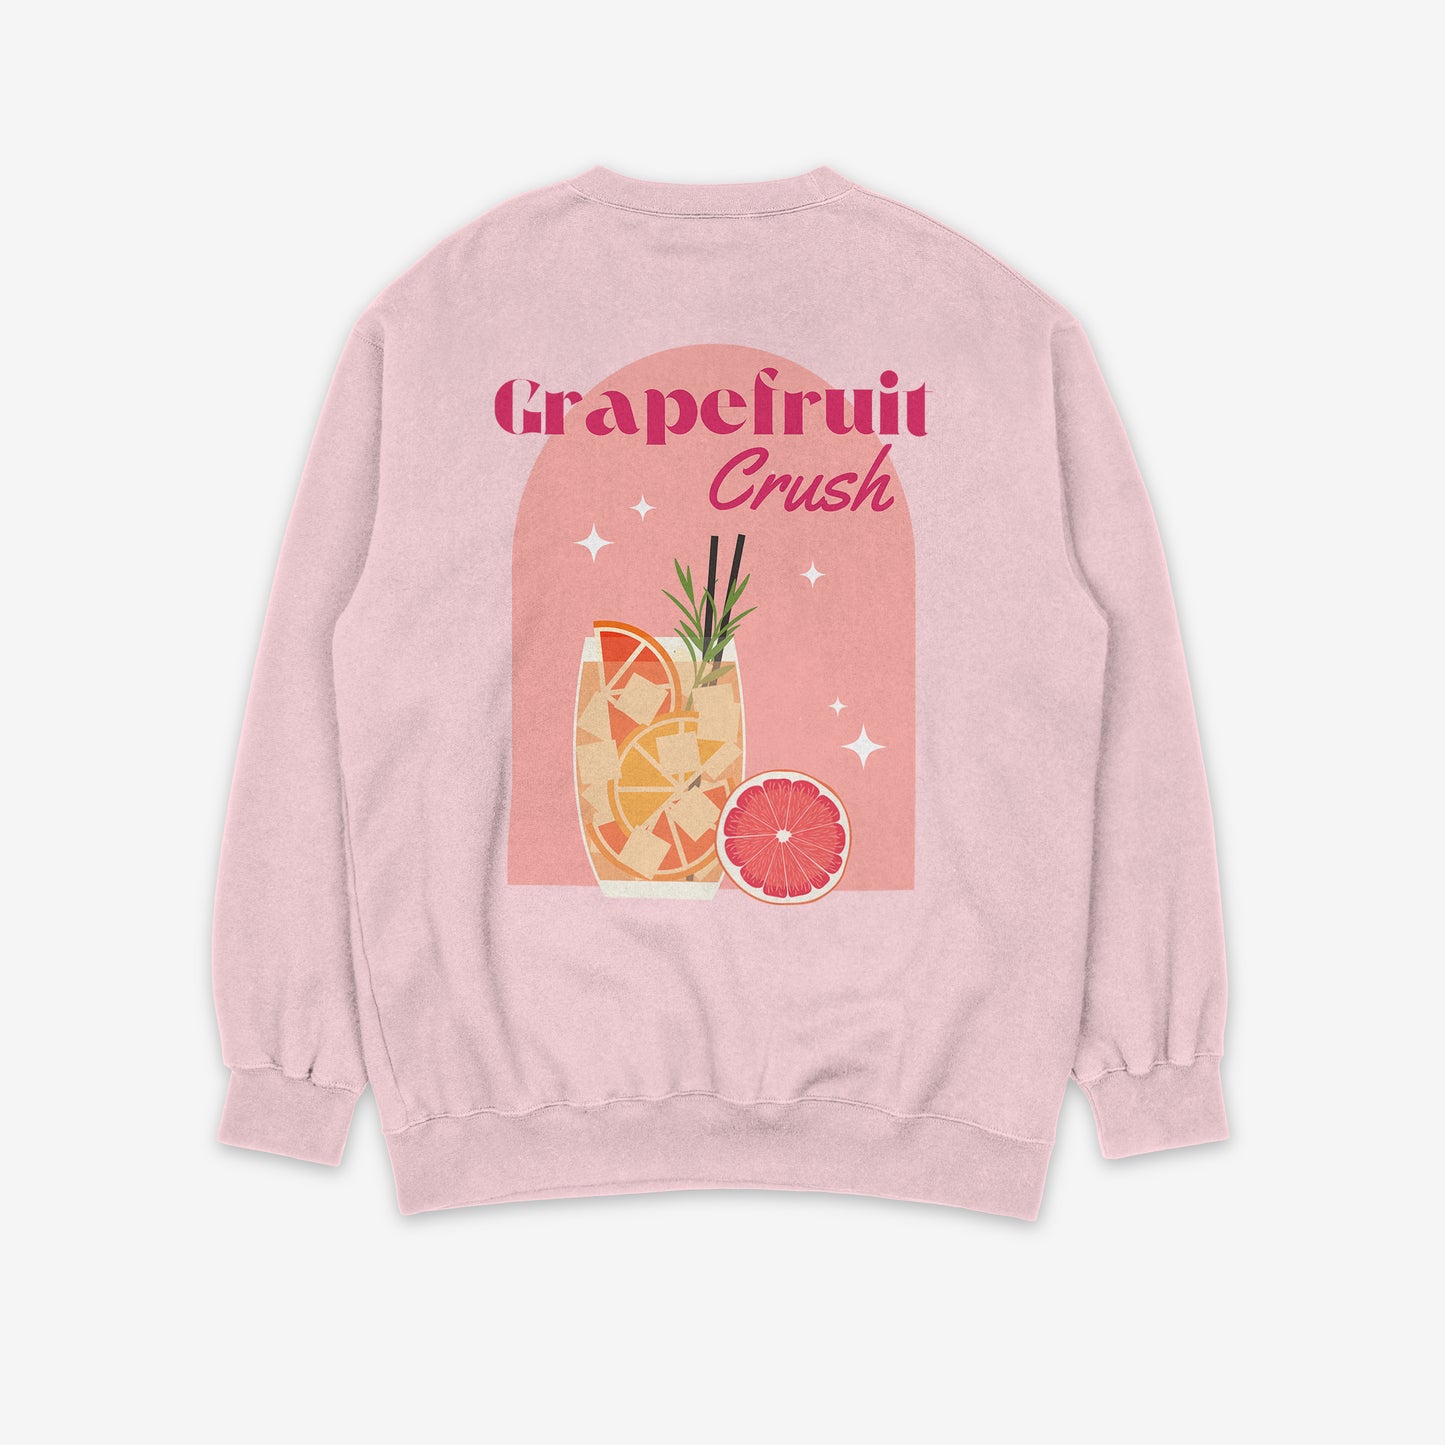 Grapefruit Crush Sweatshirt